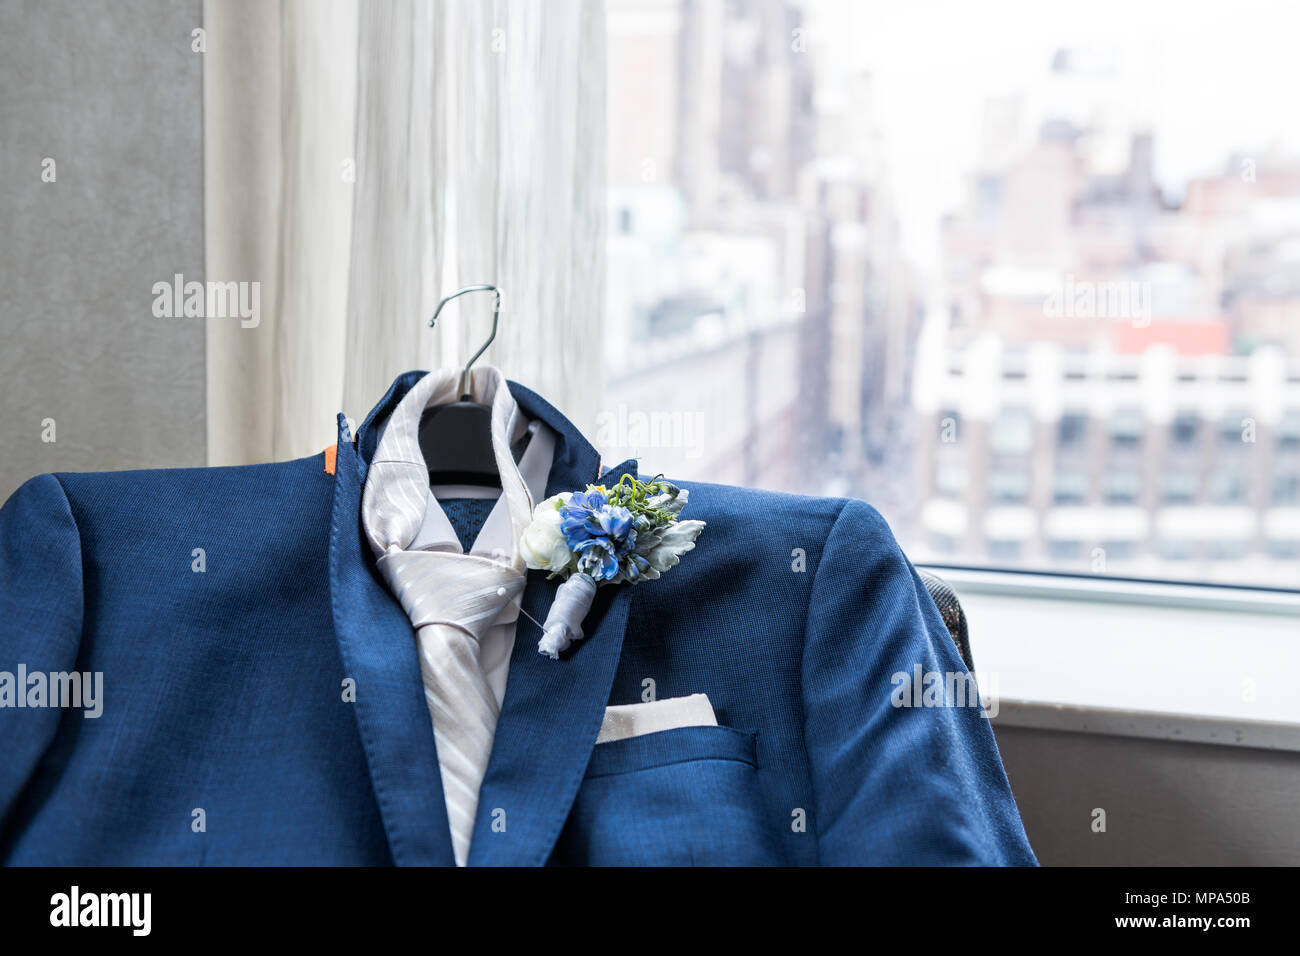 Los hombres de traje y corbata novio closeup flor en el ojal, preparación de boda pin, pañuelo bolsillo, ventana con vista urbana de la ciudad Nueva York NYC Ma